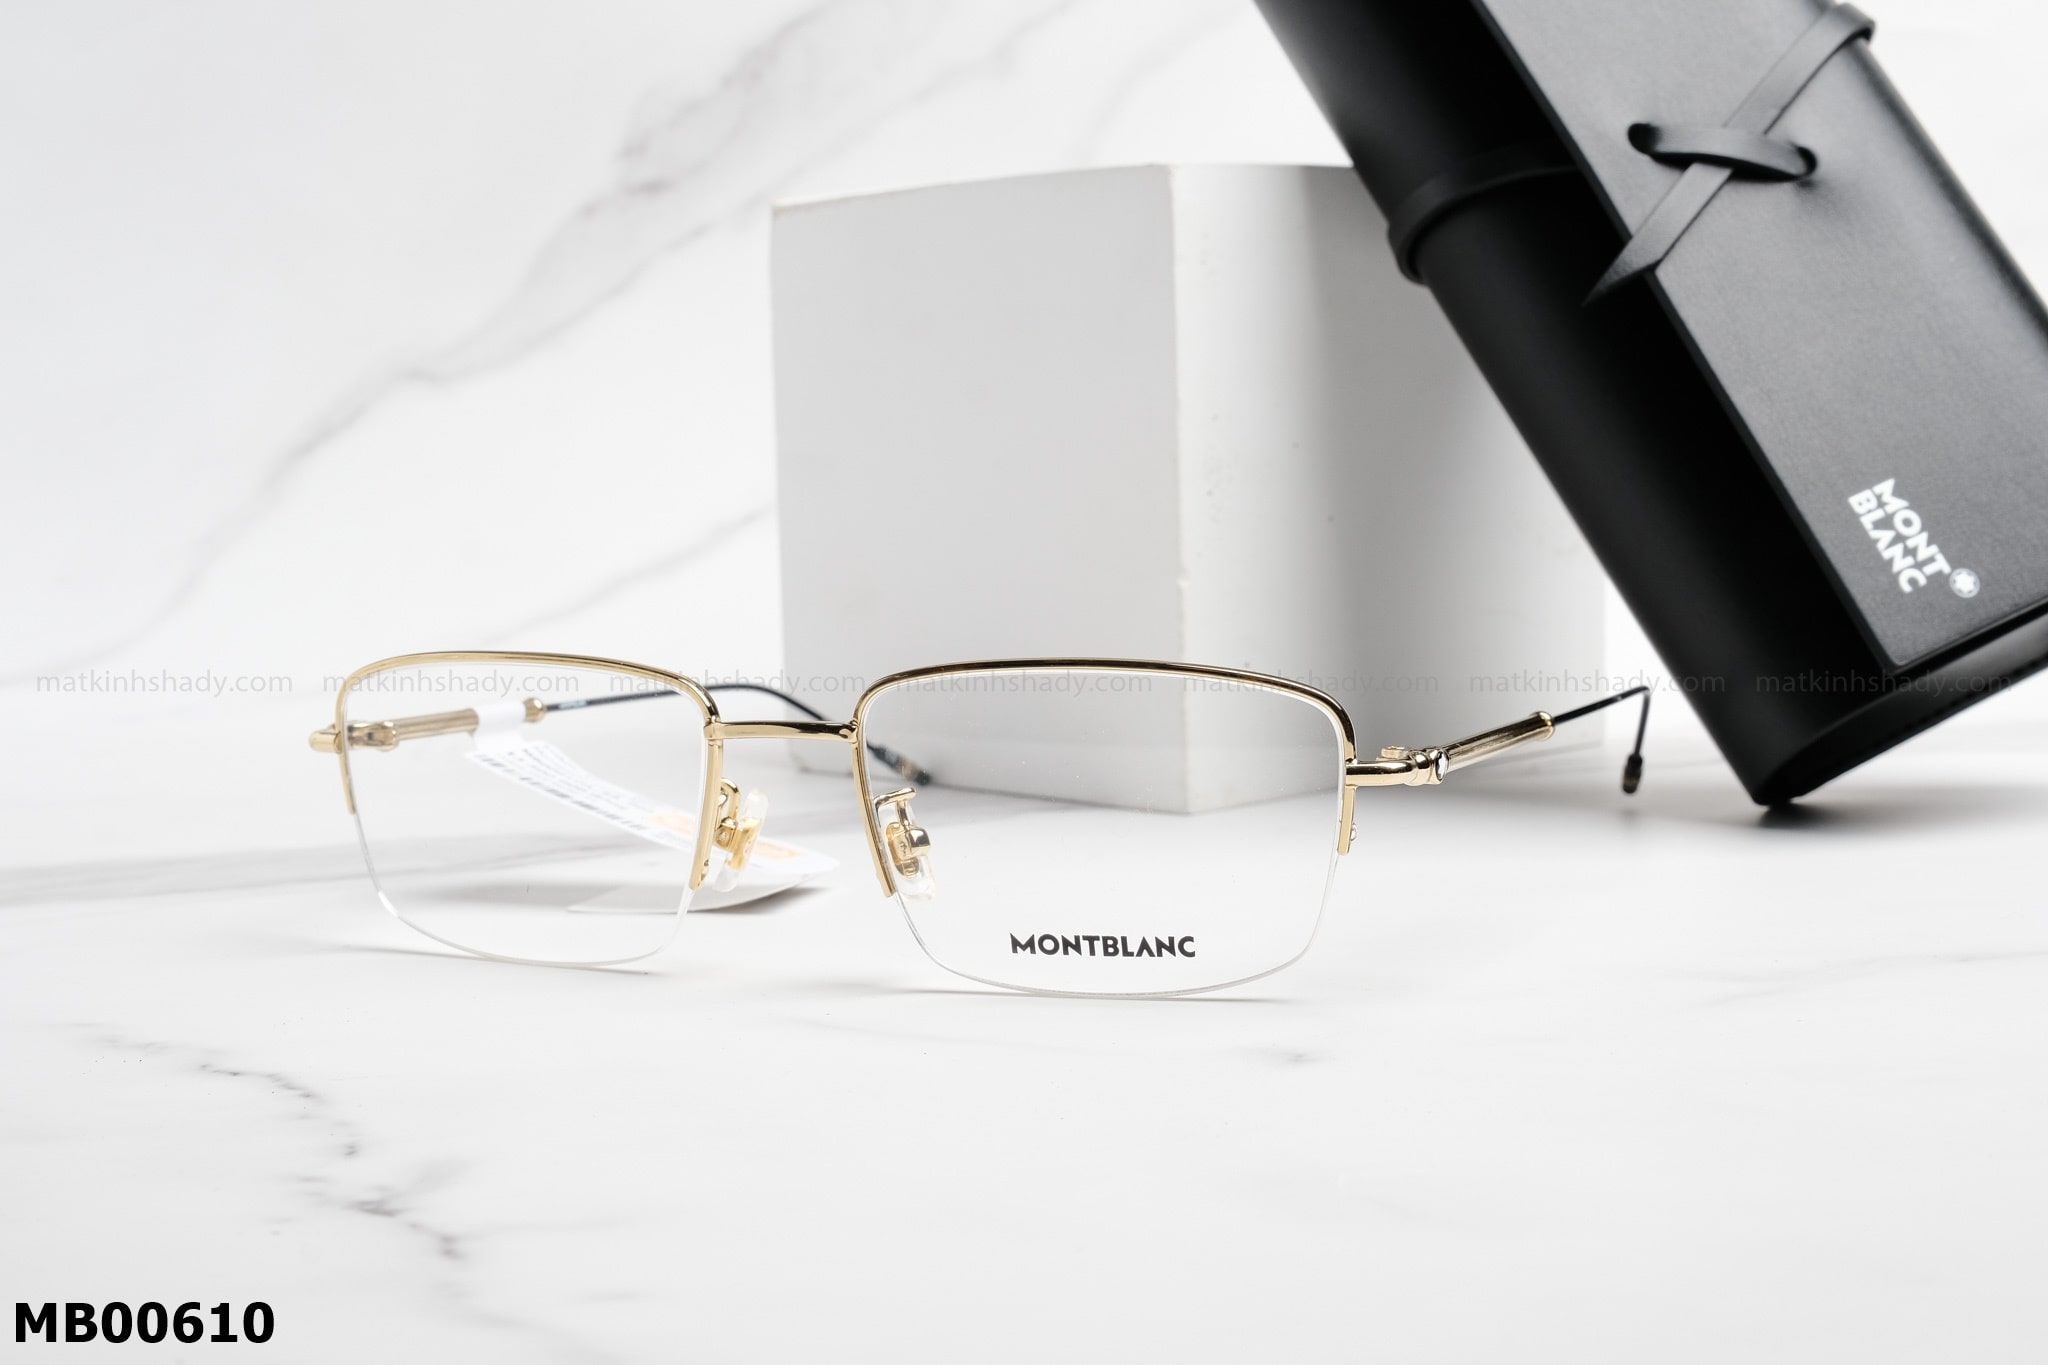  Montblanc Eyewear - Glasses - MB00610 